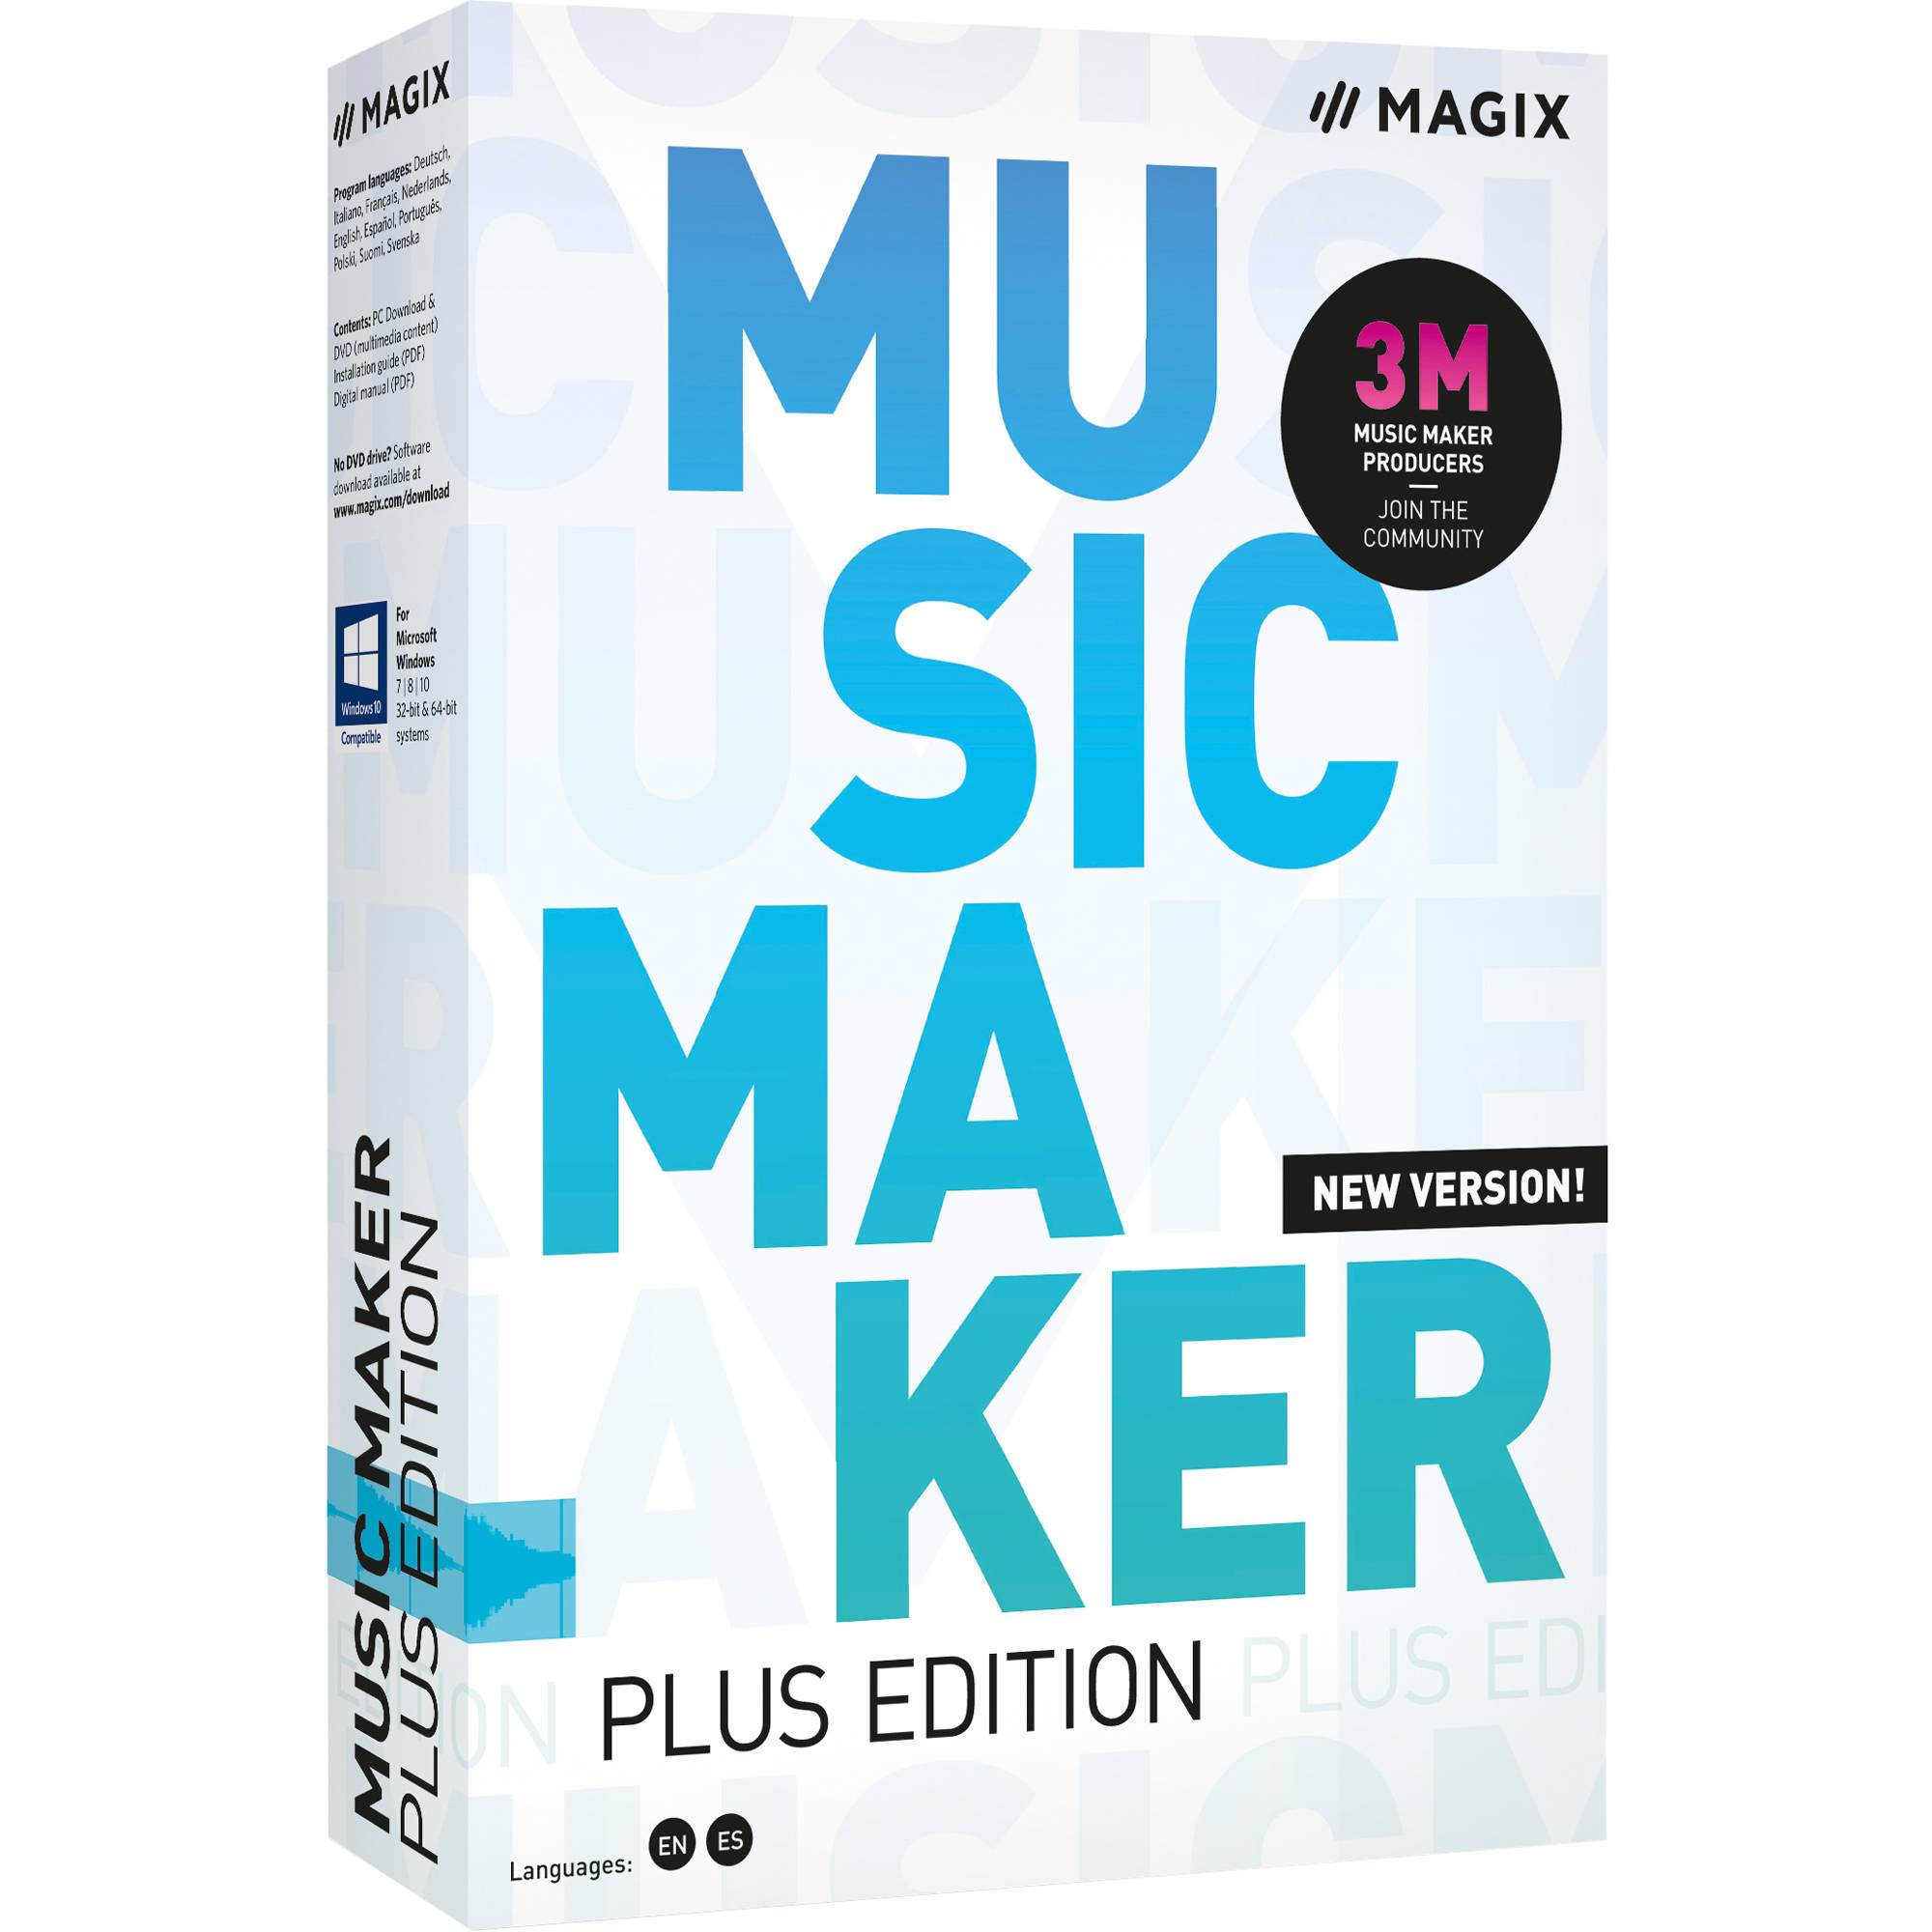 magix music maker rap